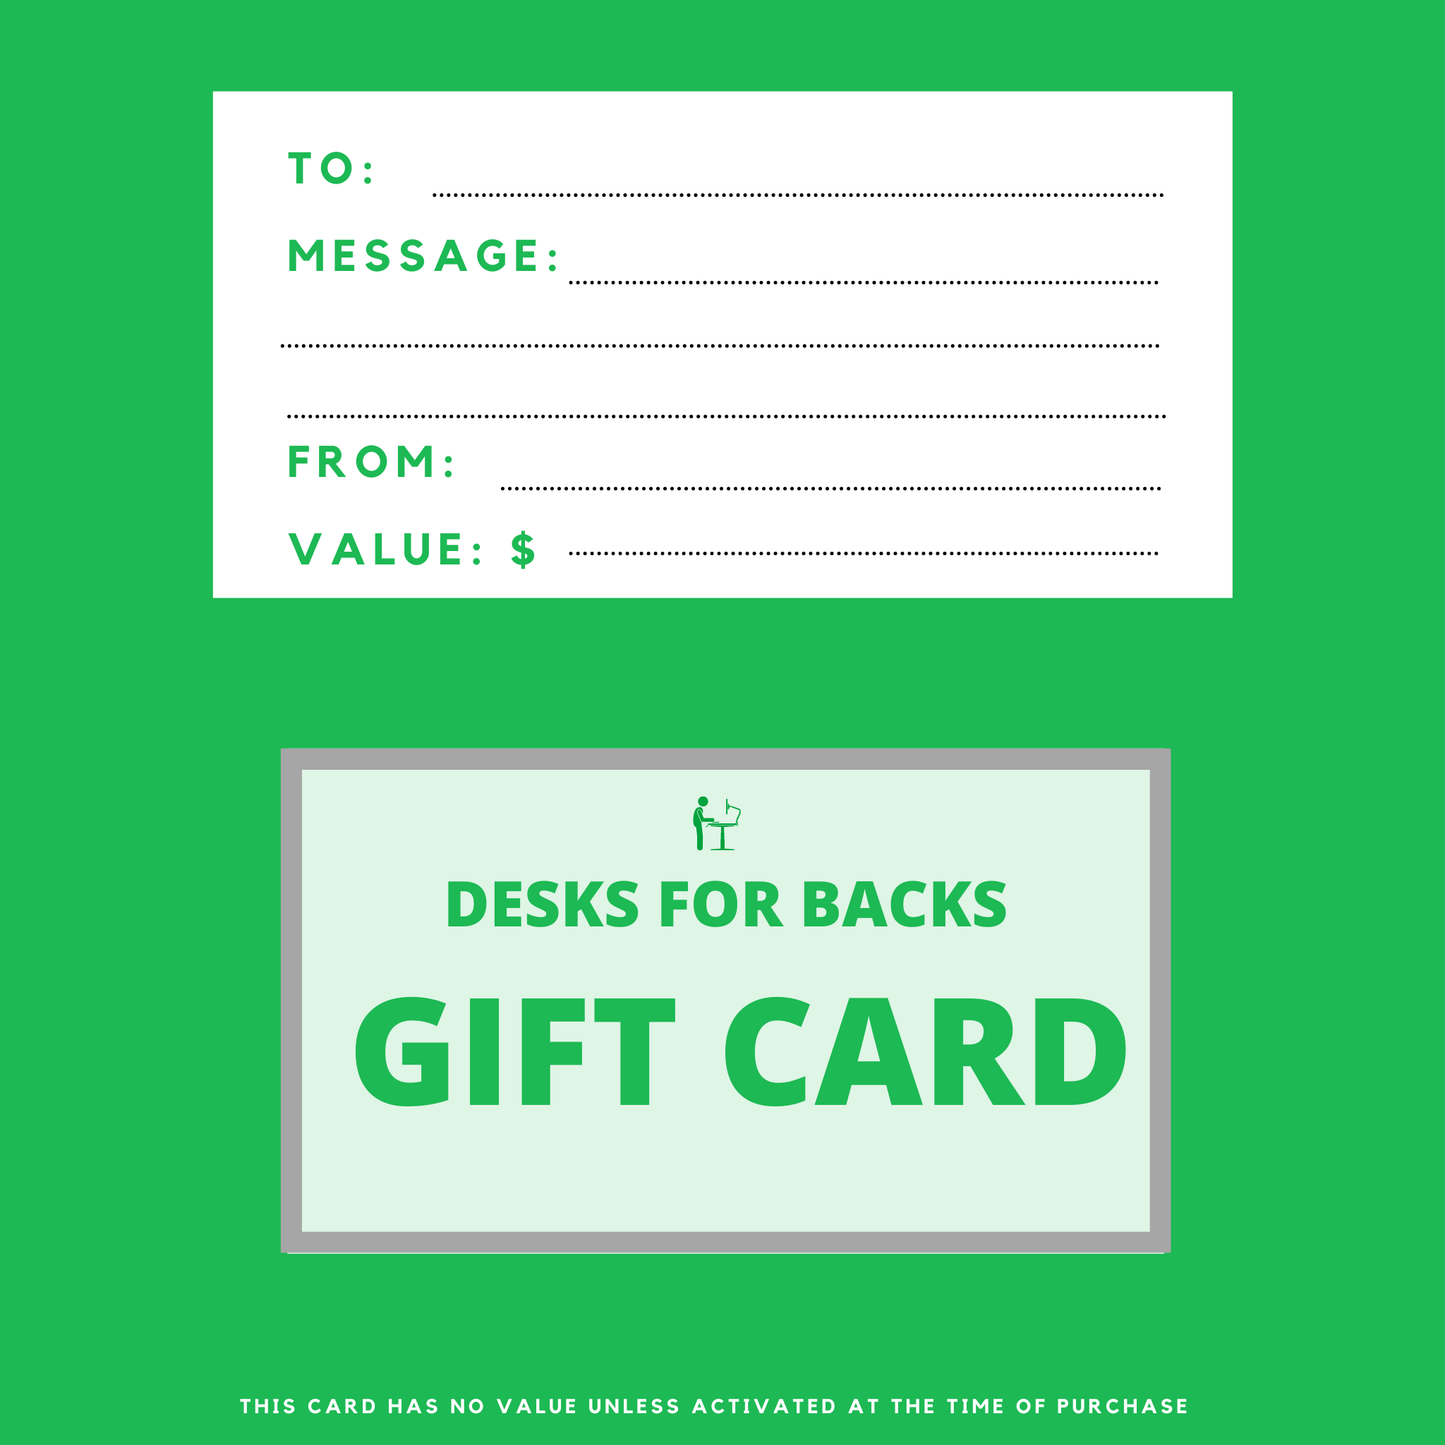 Desks for backs gift card